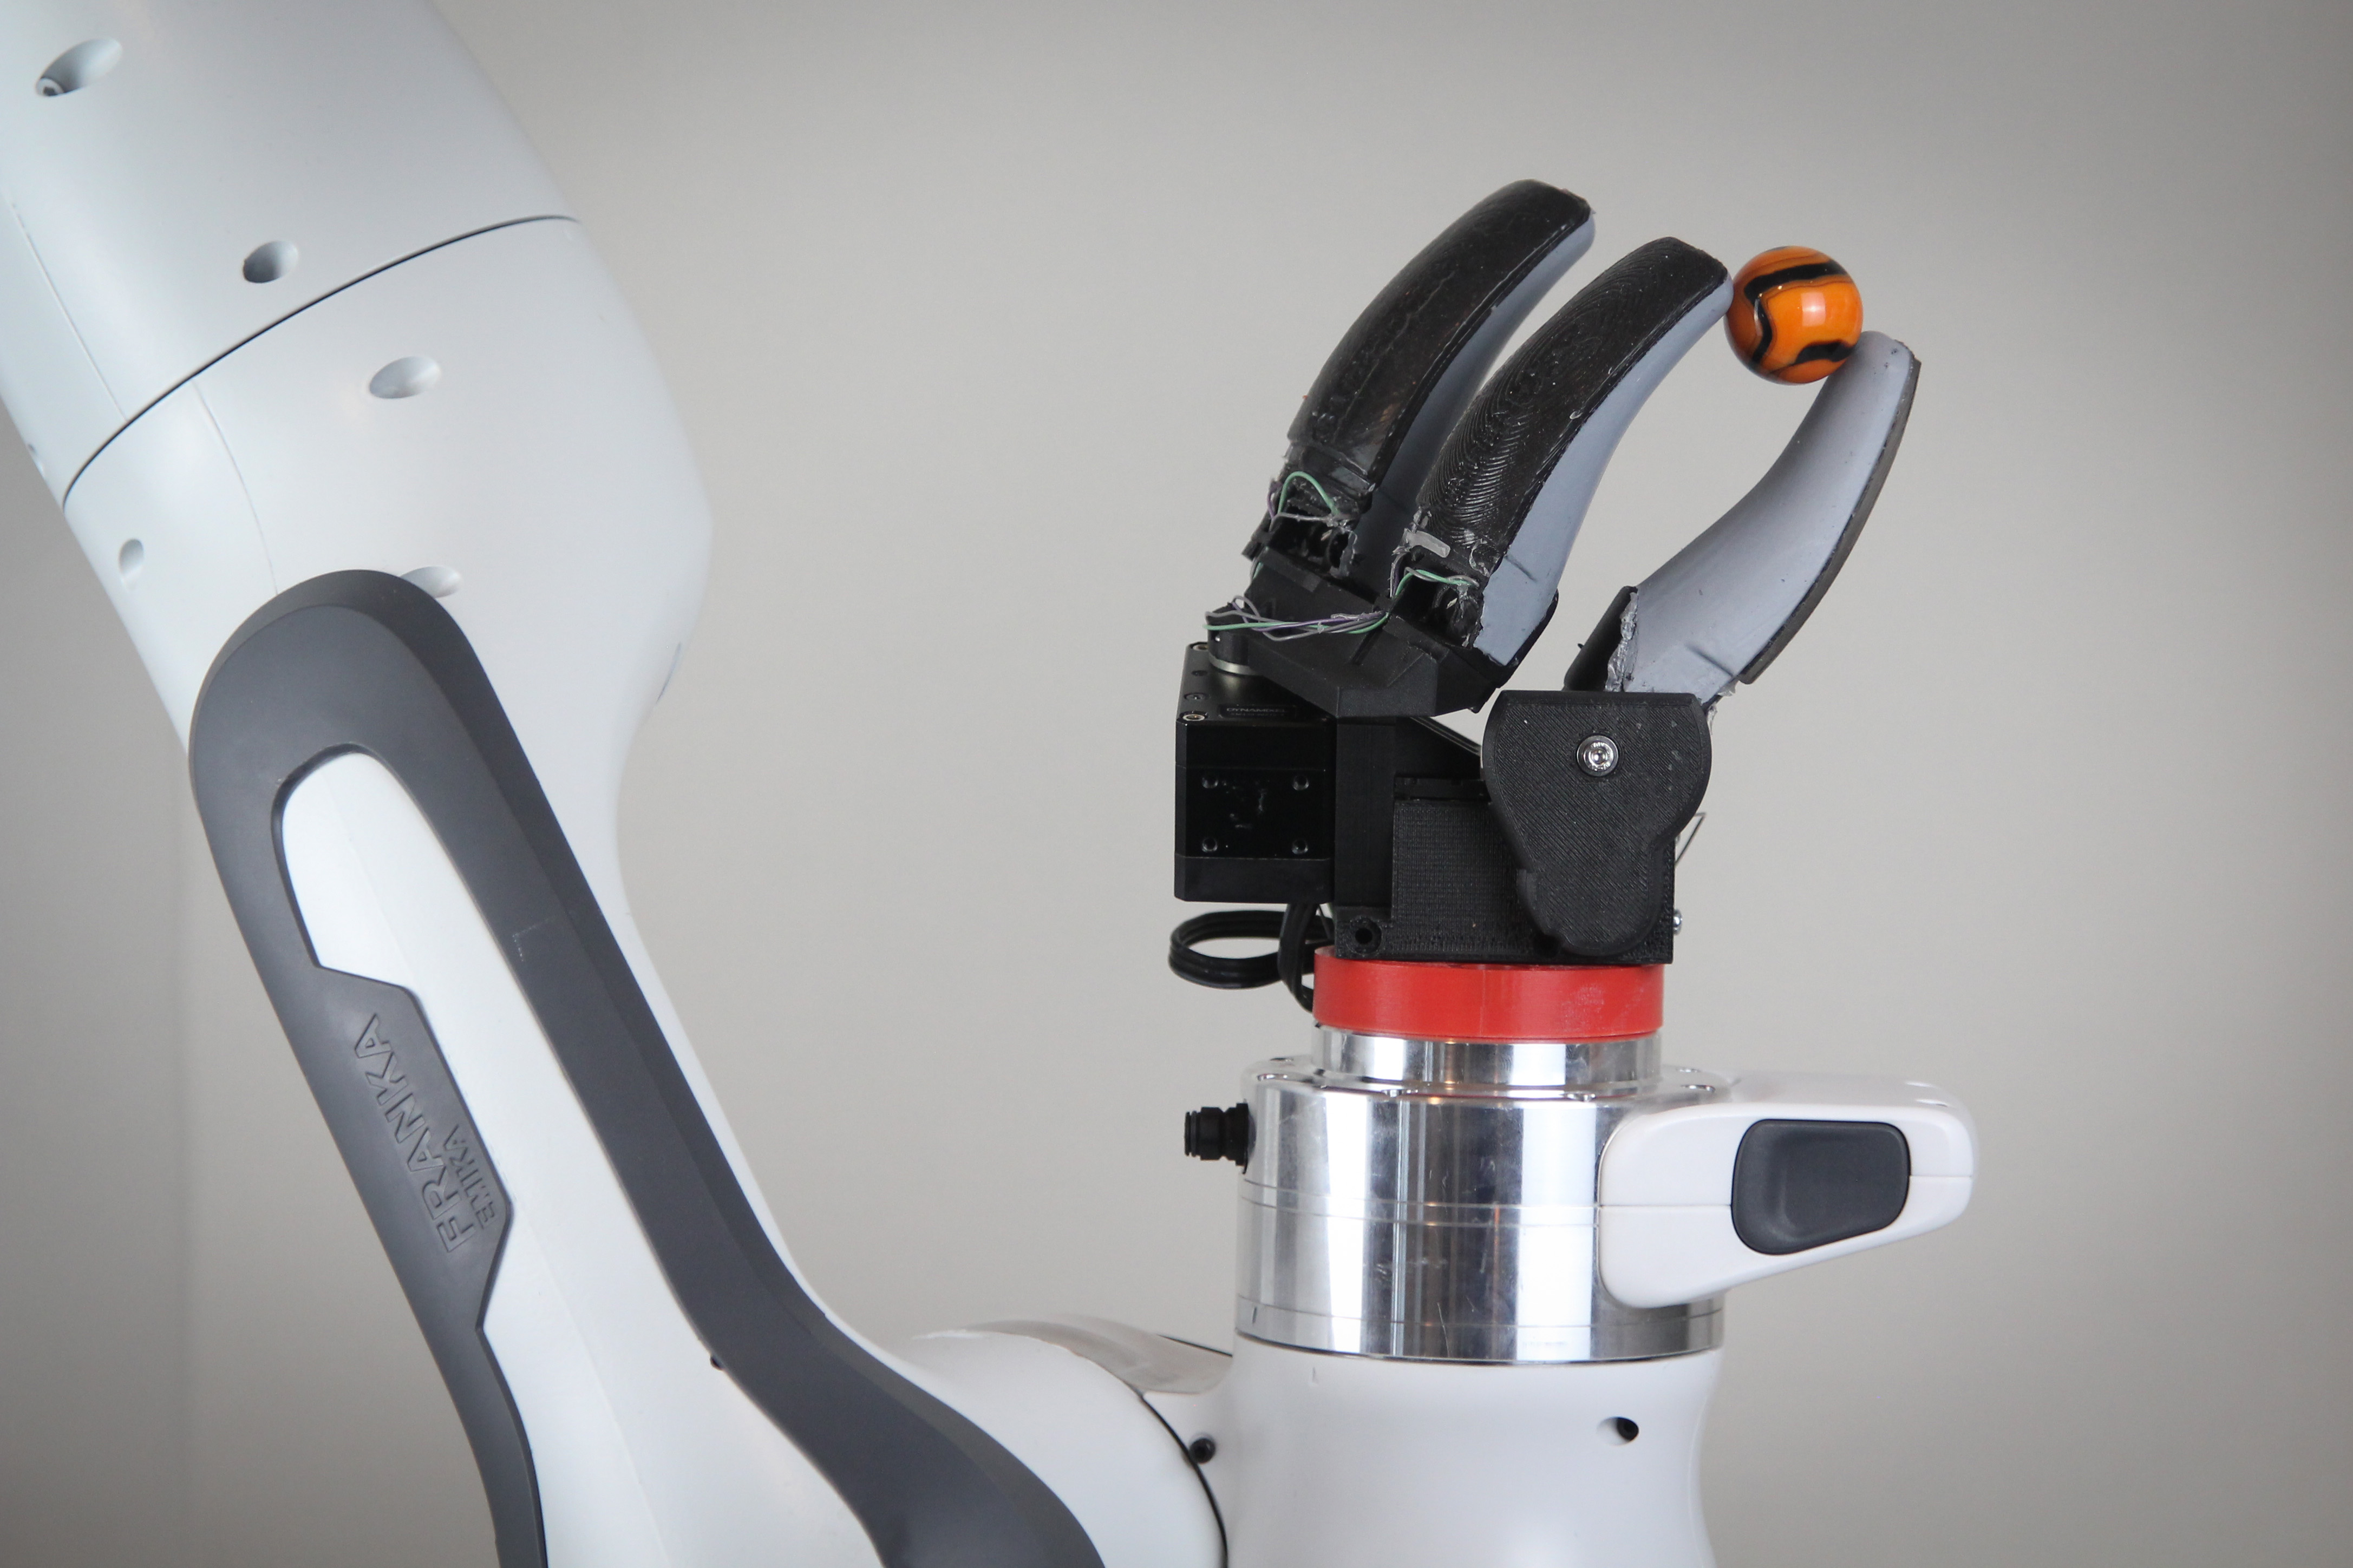 Un sensor en forma de dedo permite robots más diestros |  Noticias del MIT